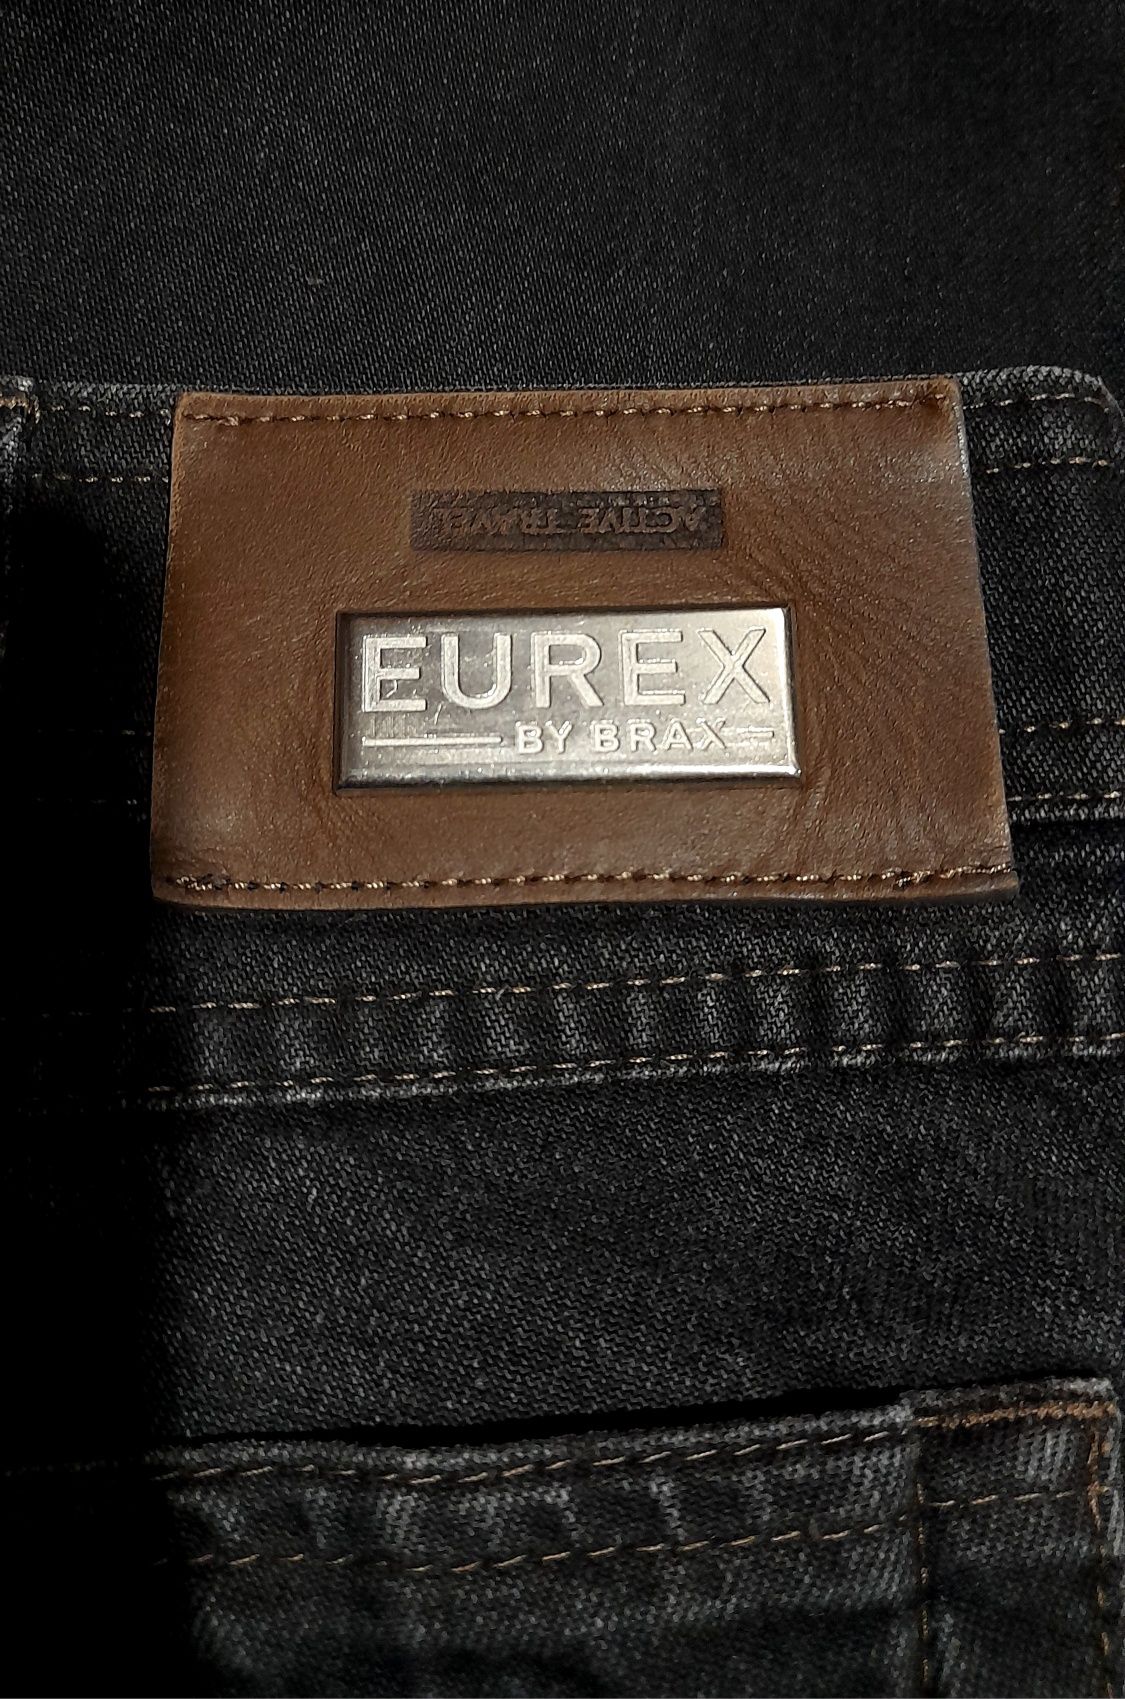 EUREX. Мужские Классические  Польские джинсы большой размер.